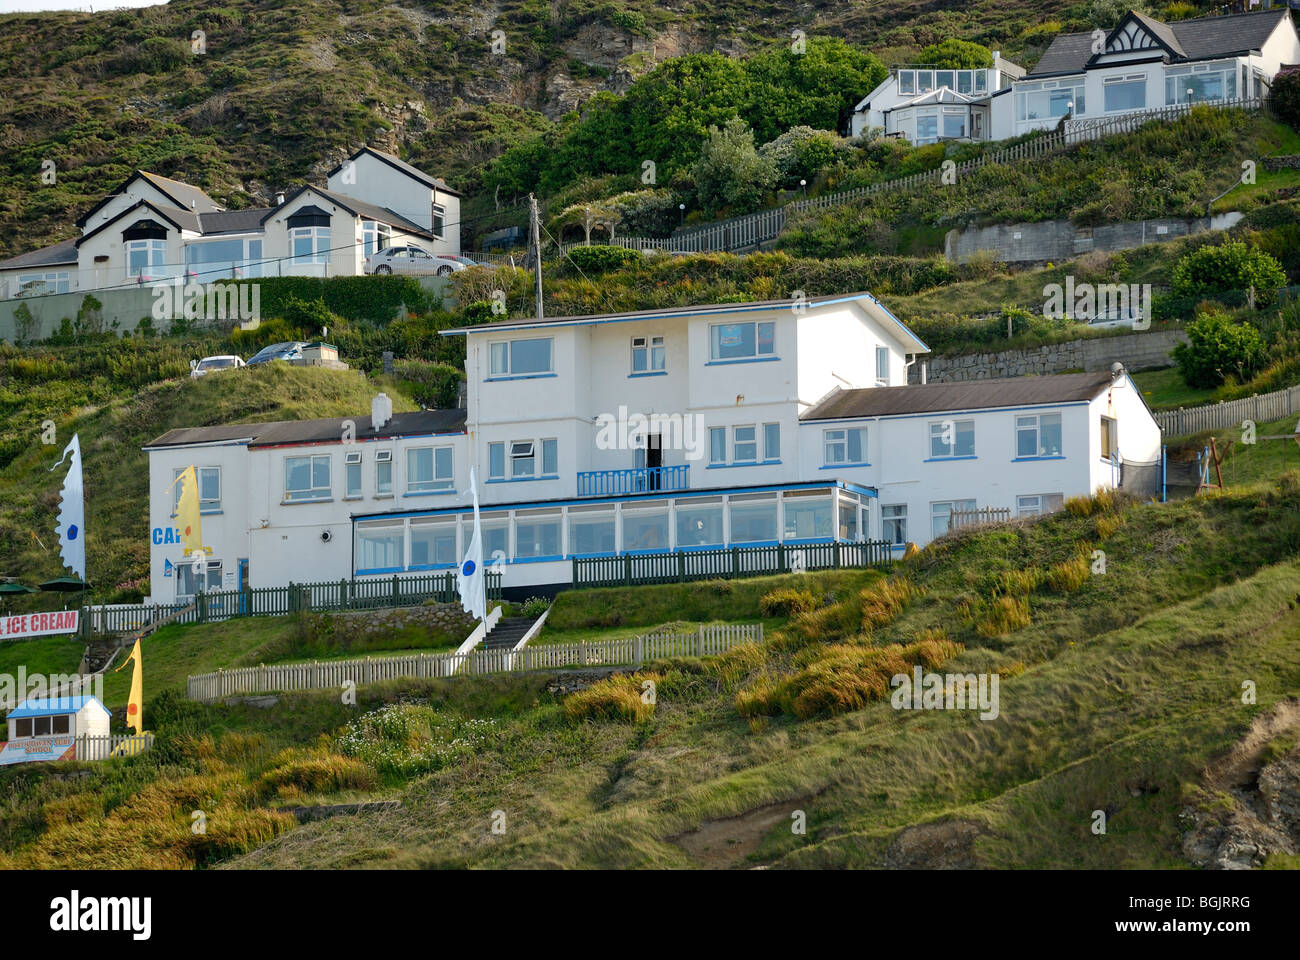 Cliff das erste Haus in der Nähe von Strand von Cornwall UK Stockfoto